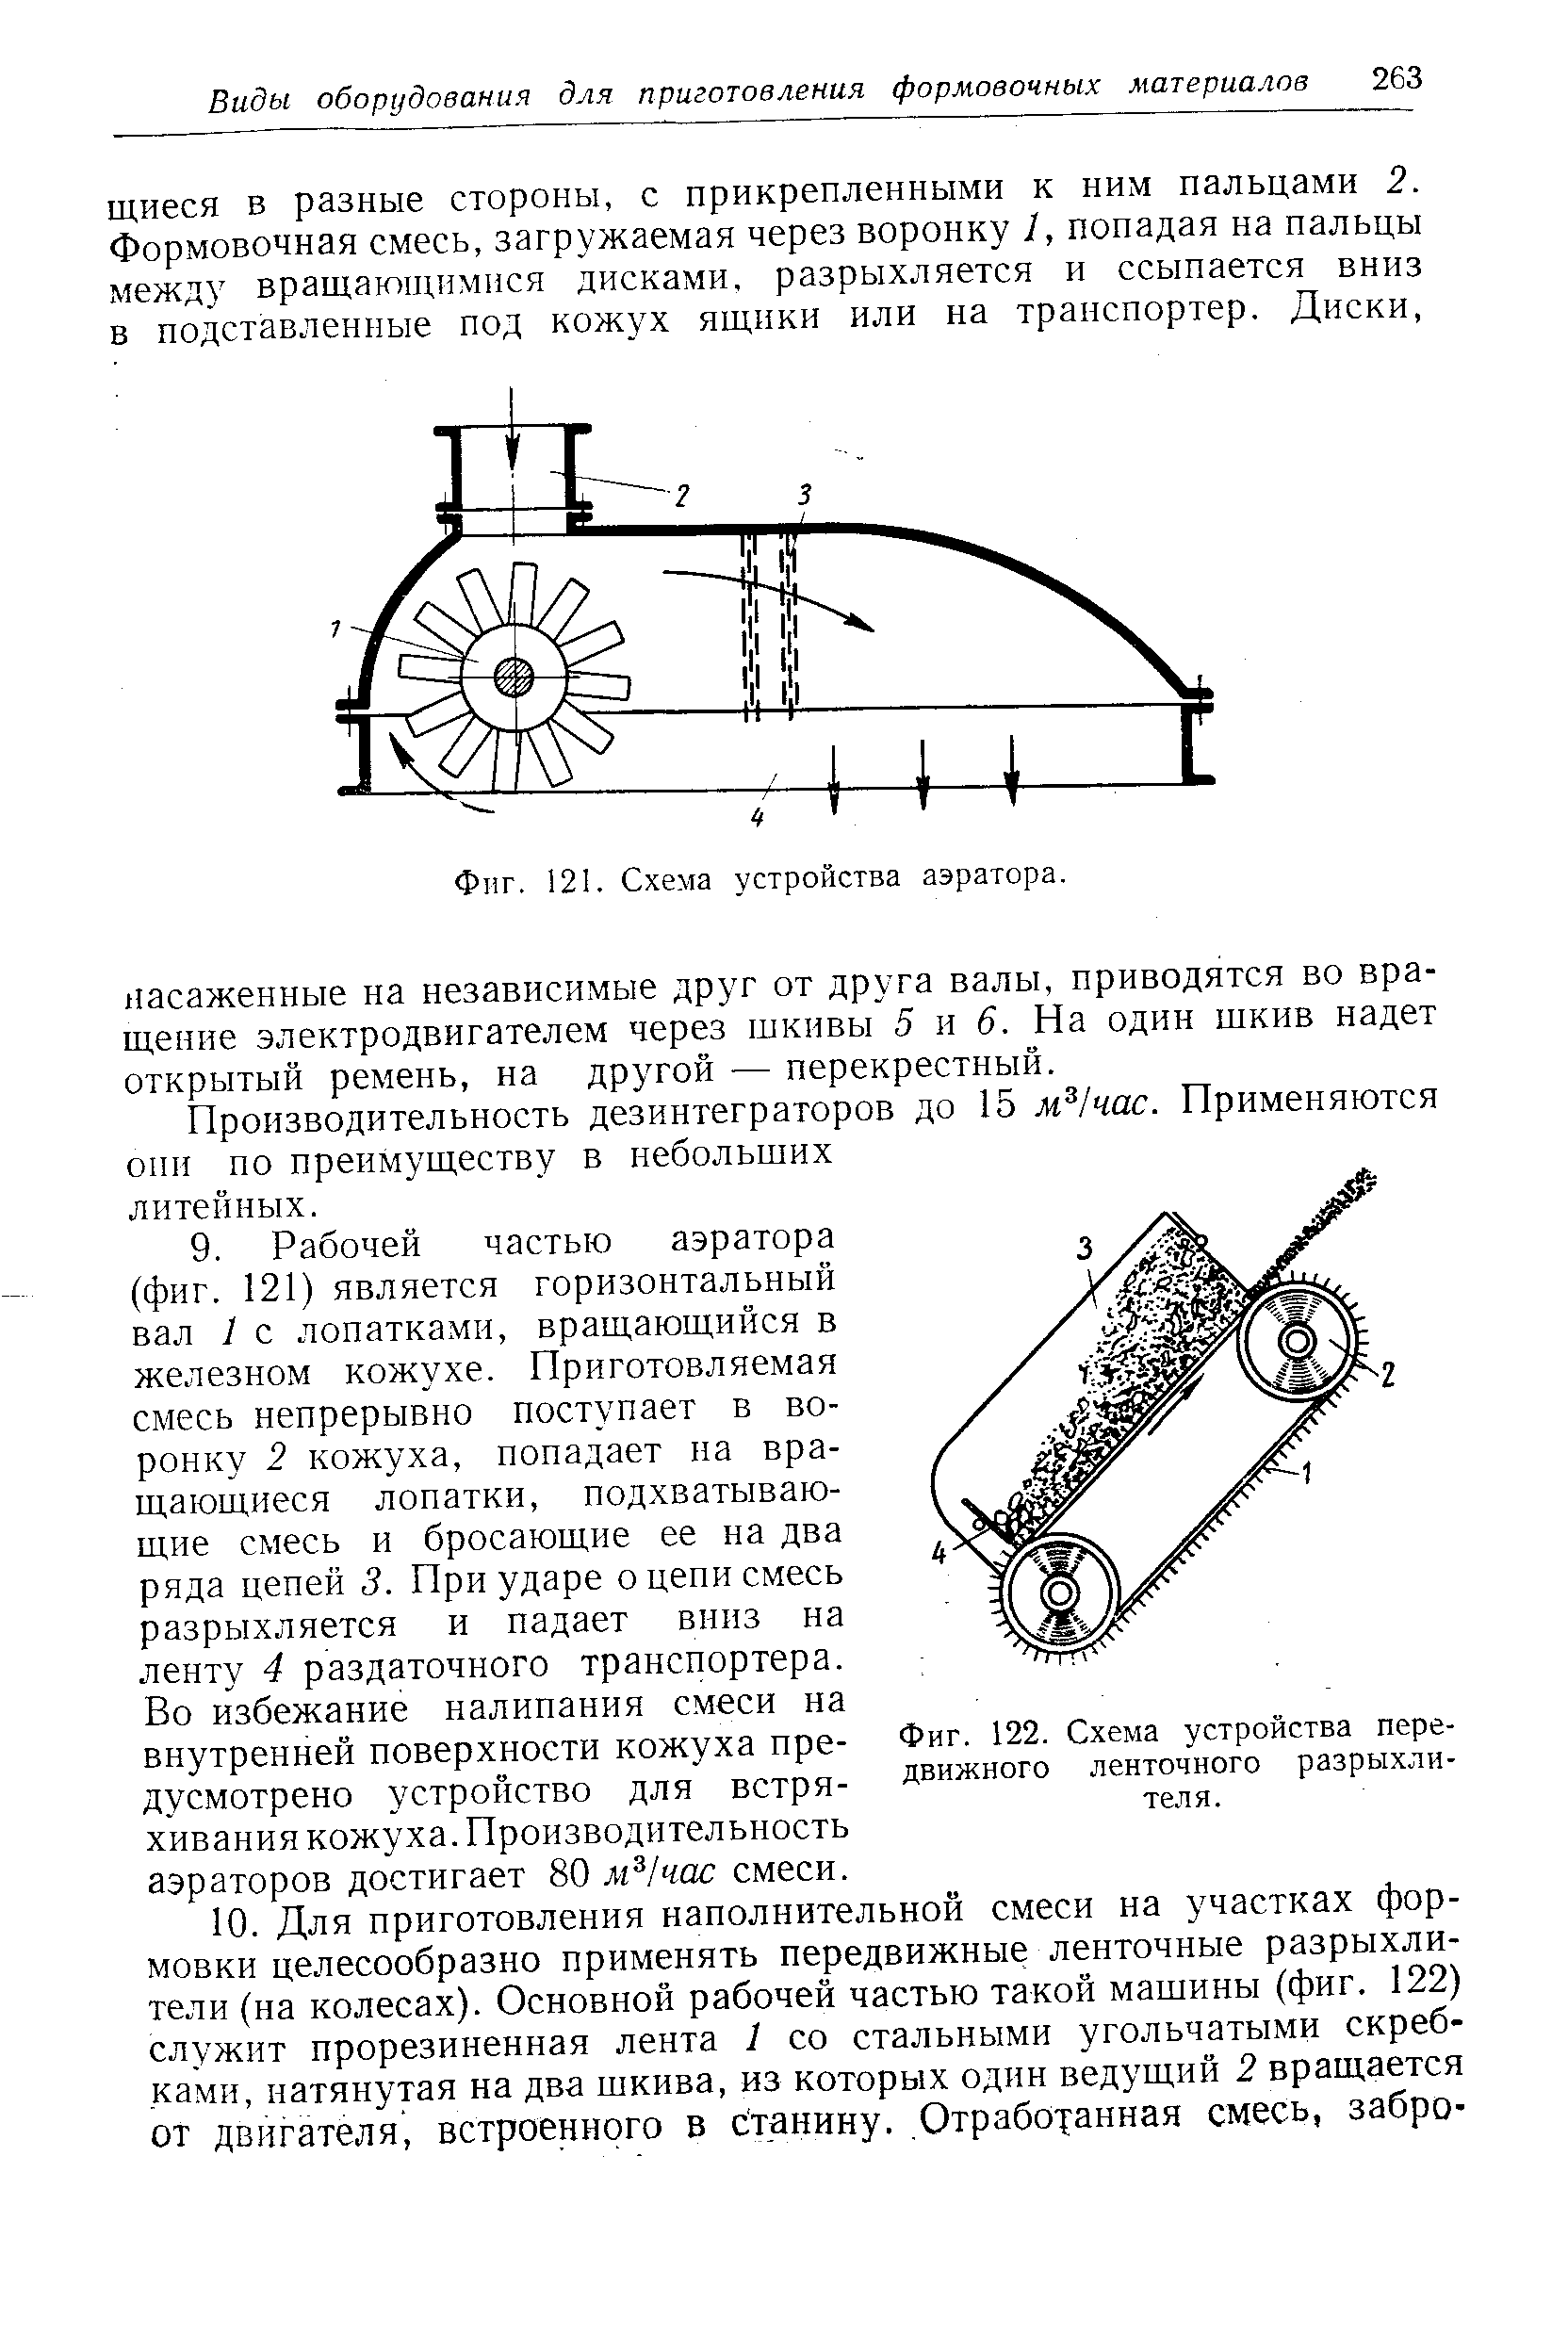 Фиг. 122. Схема устройства передвижного ленточного разрыхлителя.
